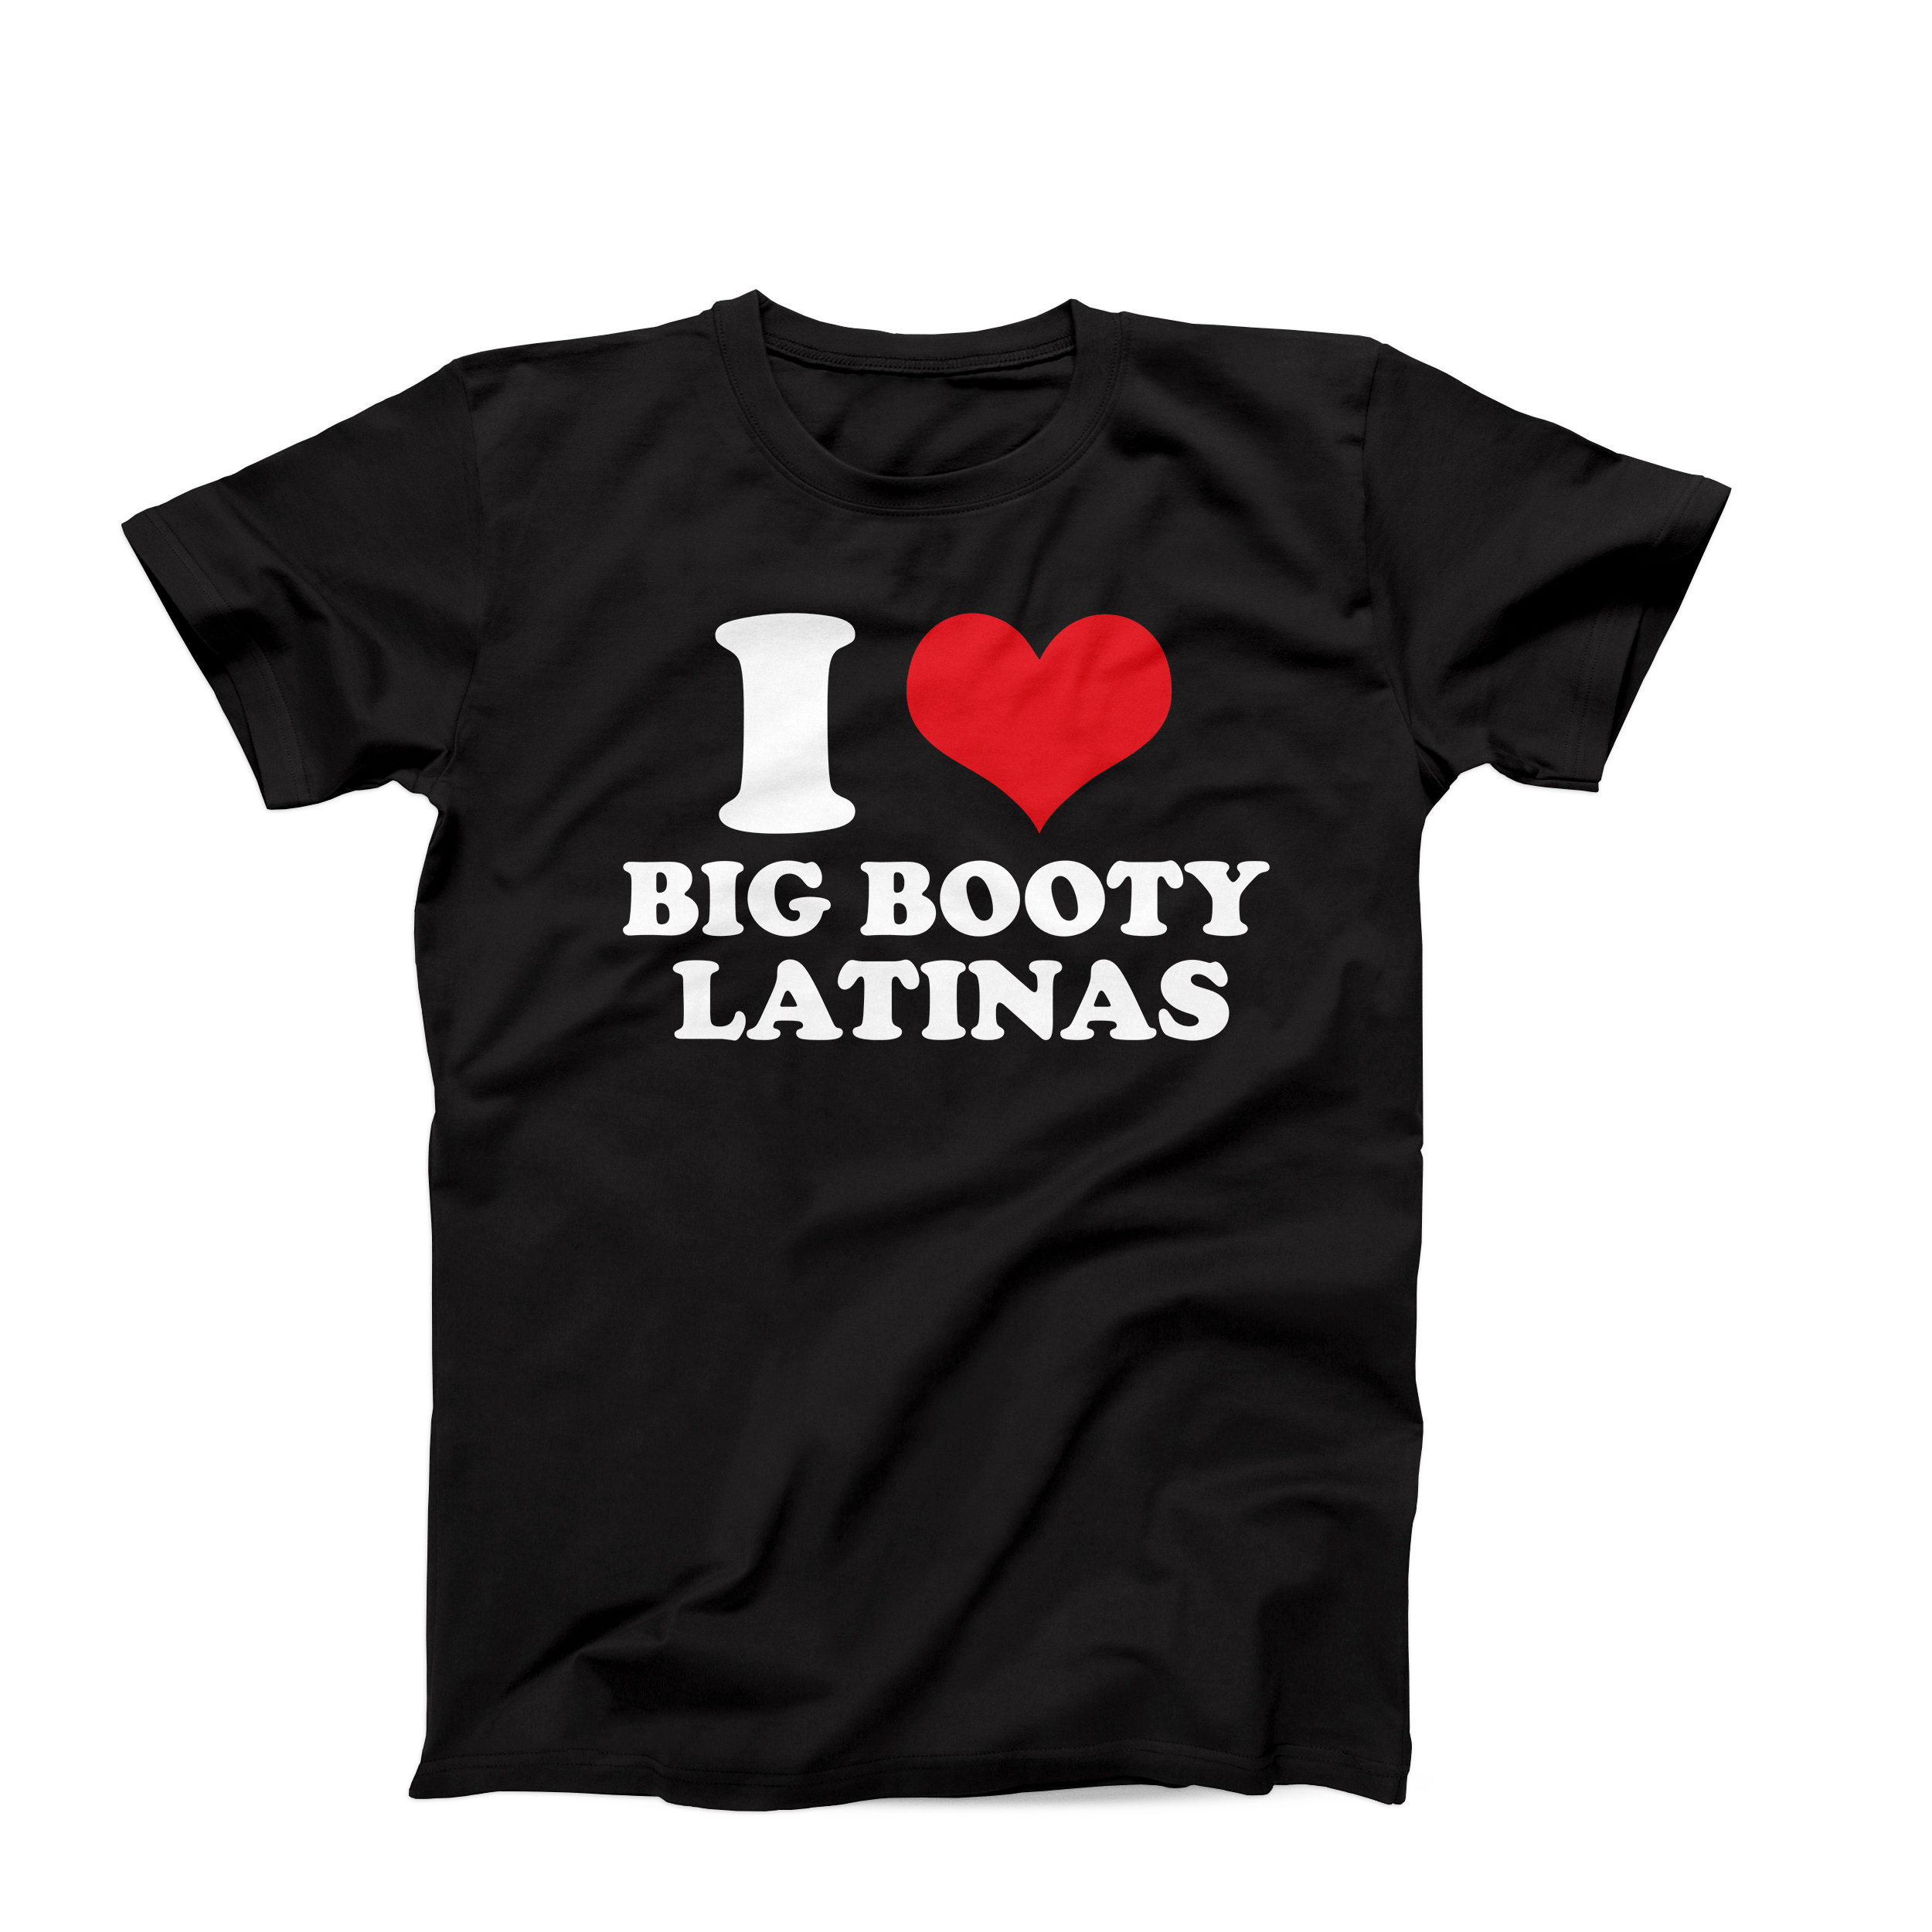 dany mayer recommends Hot Latina Big Butt